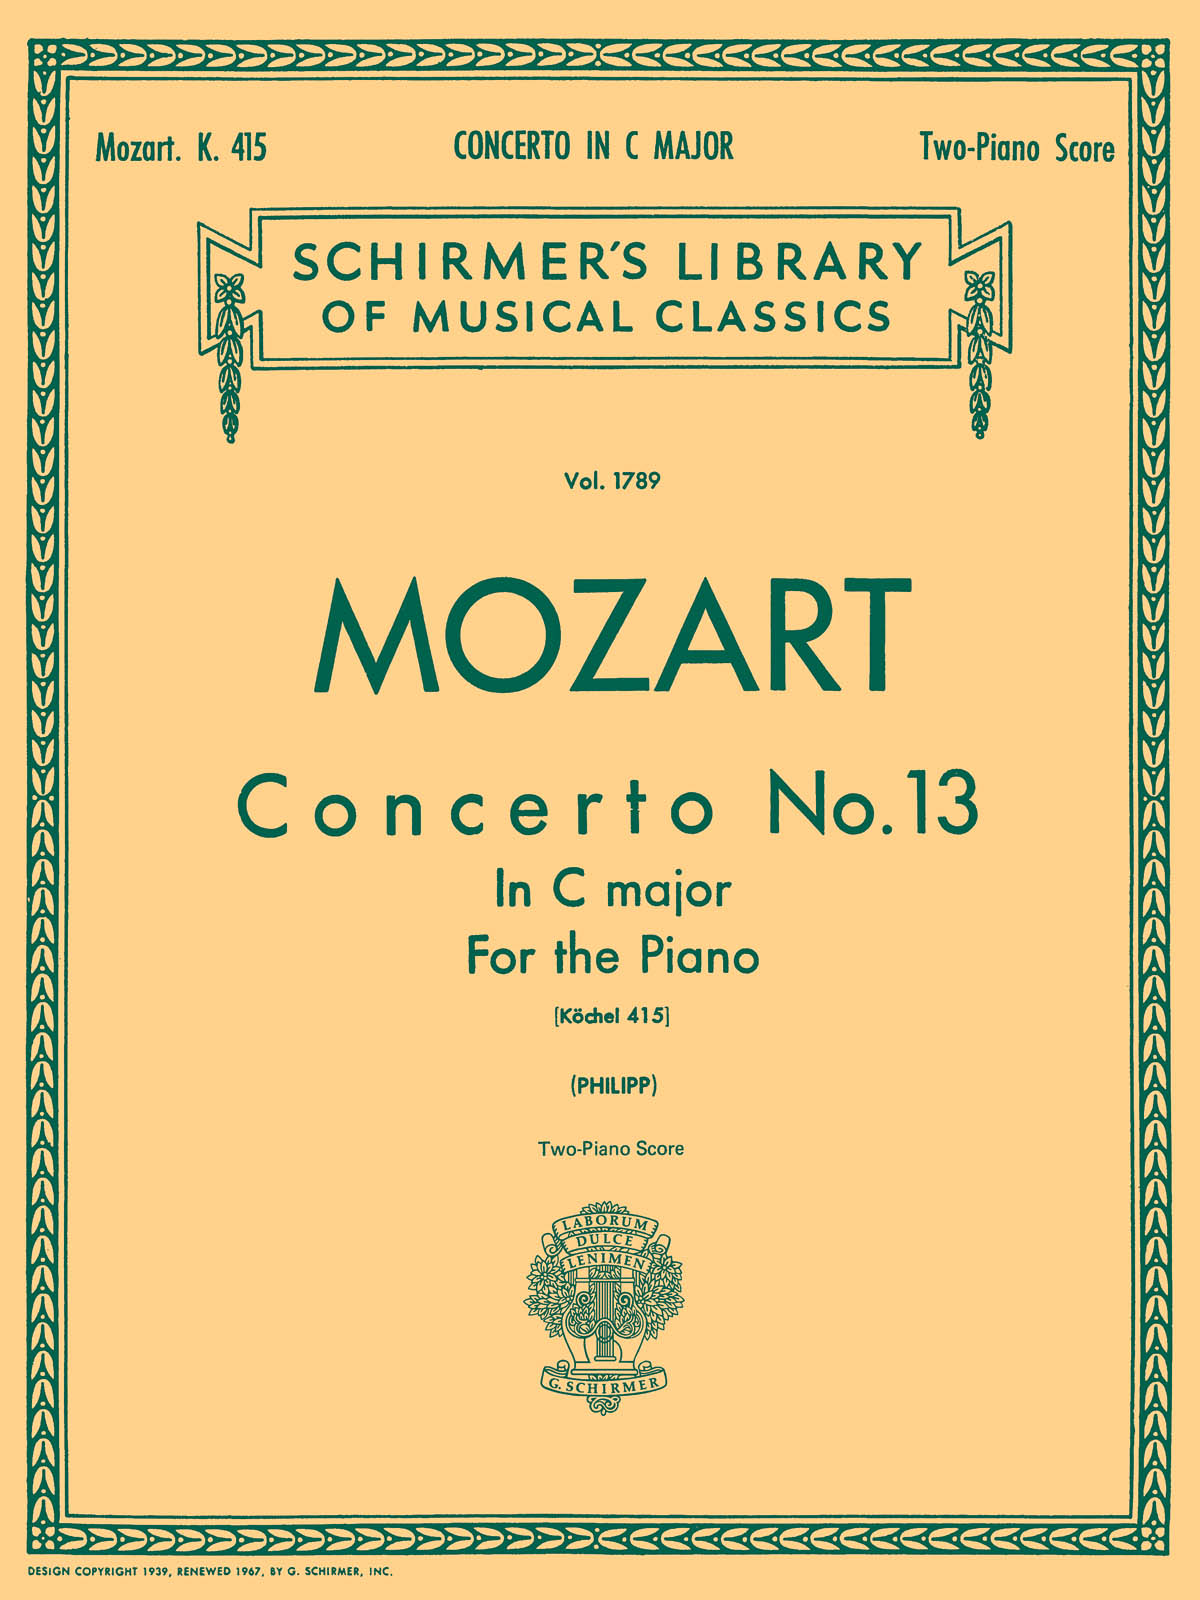 Mozart: Concerto No. 13 in C, K. 415